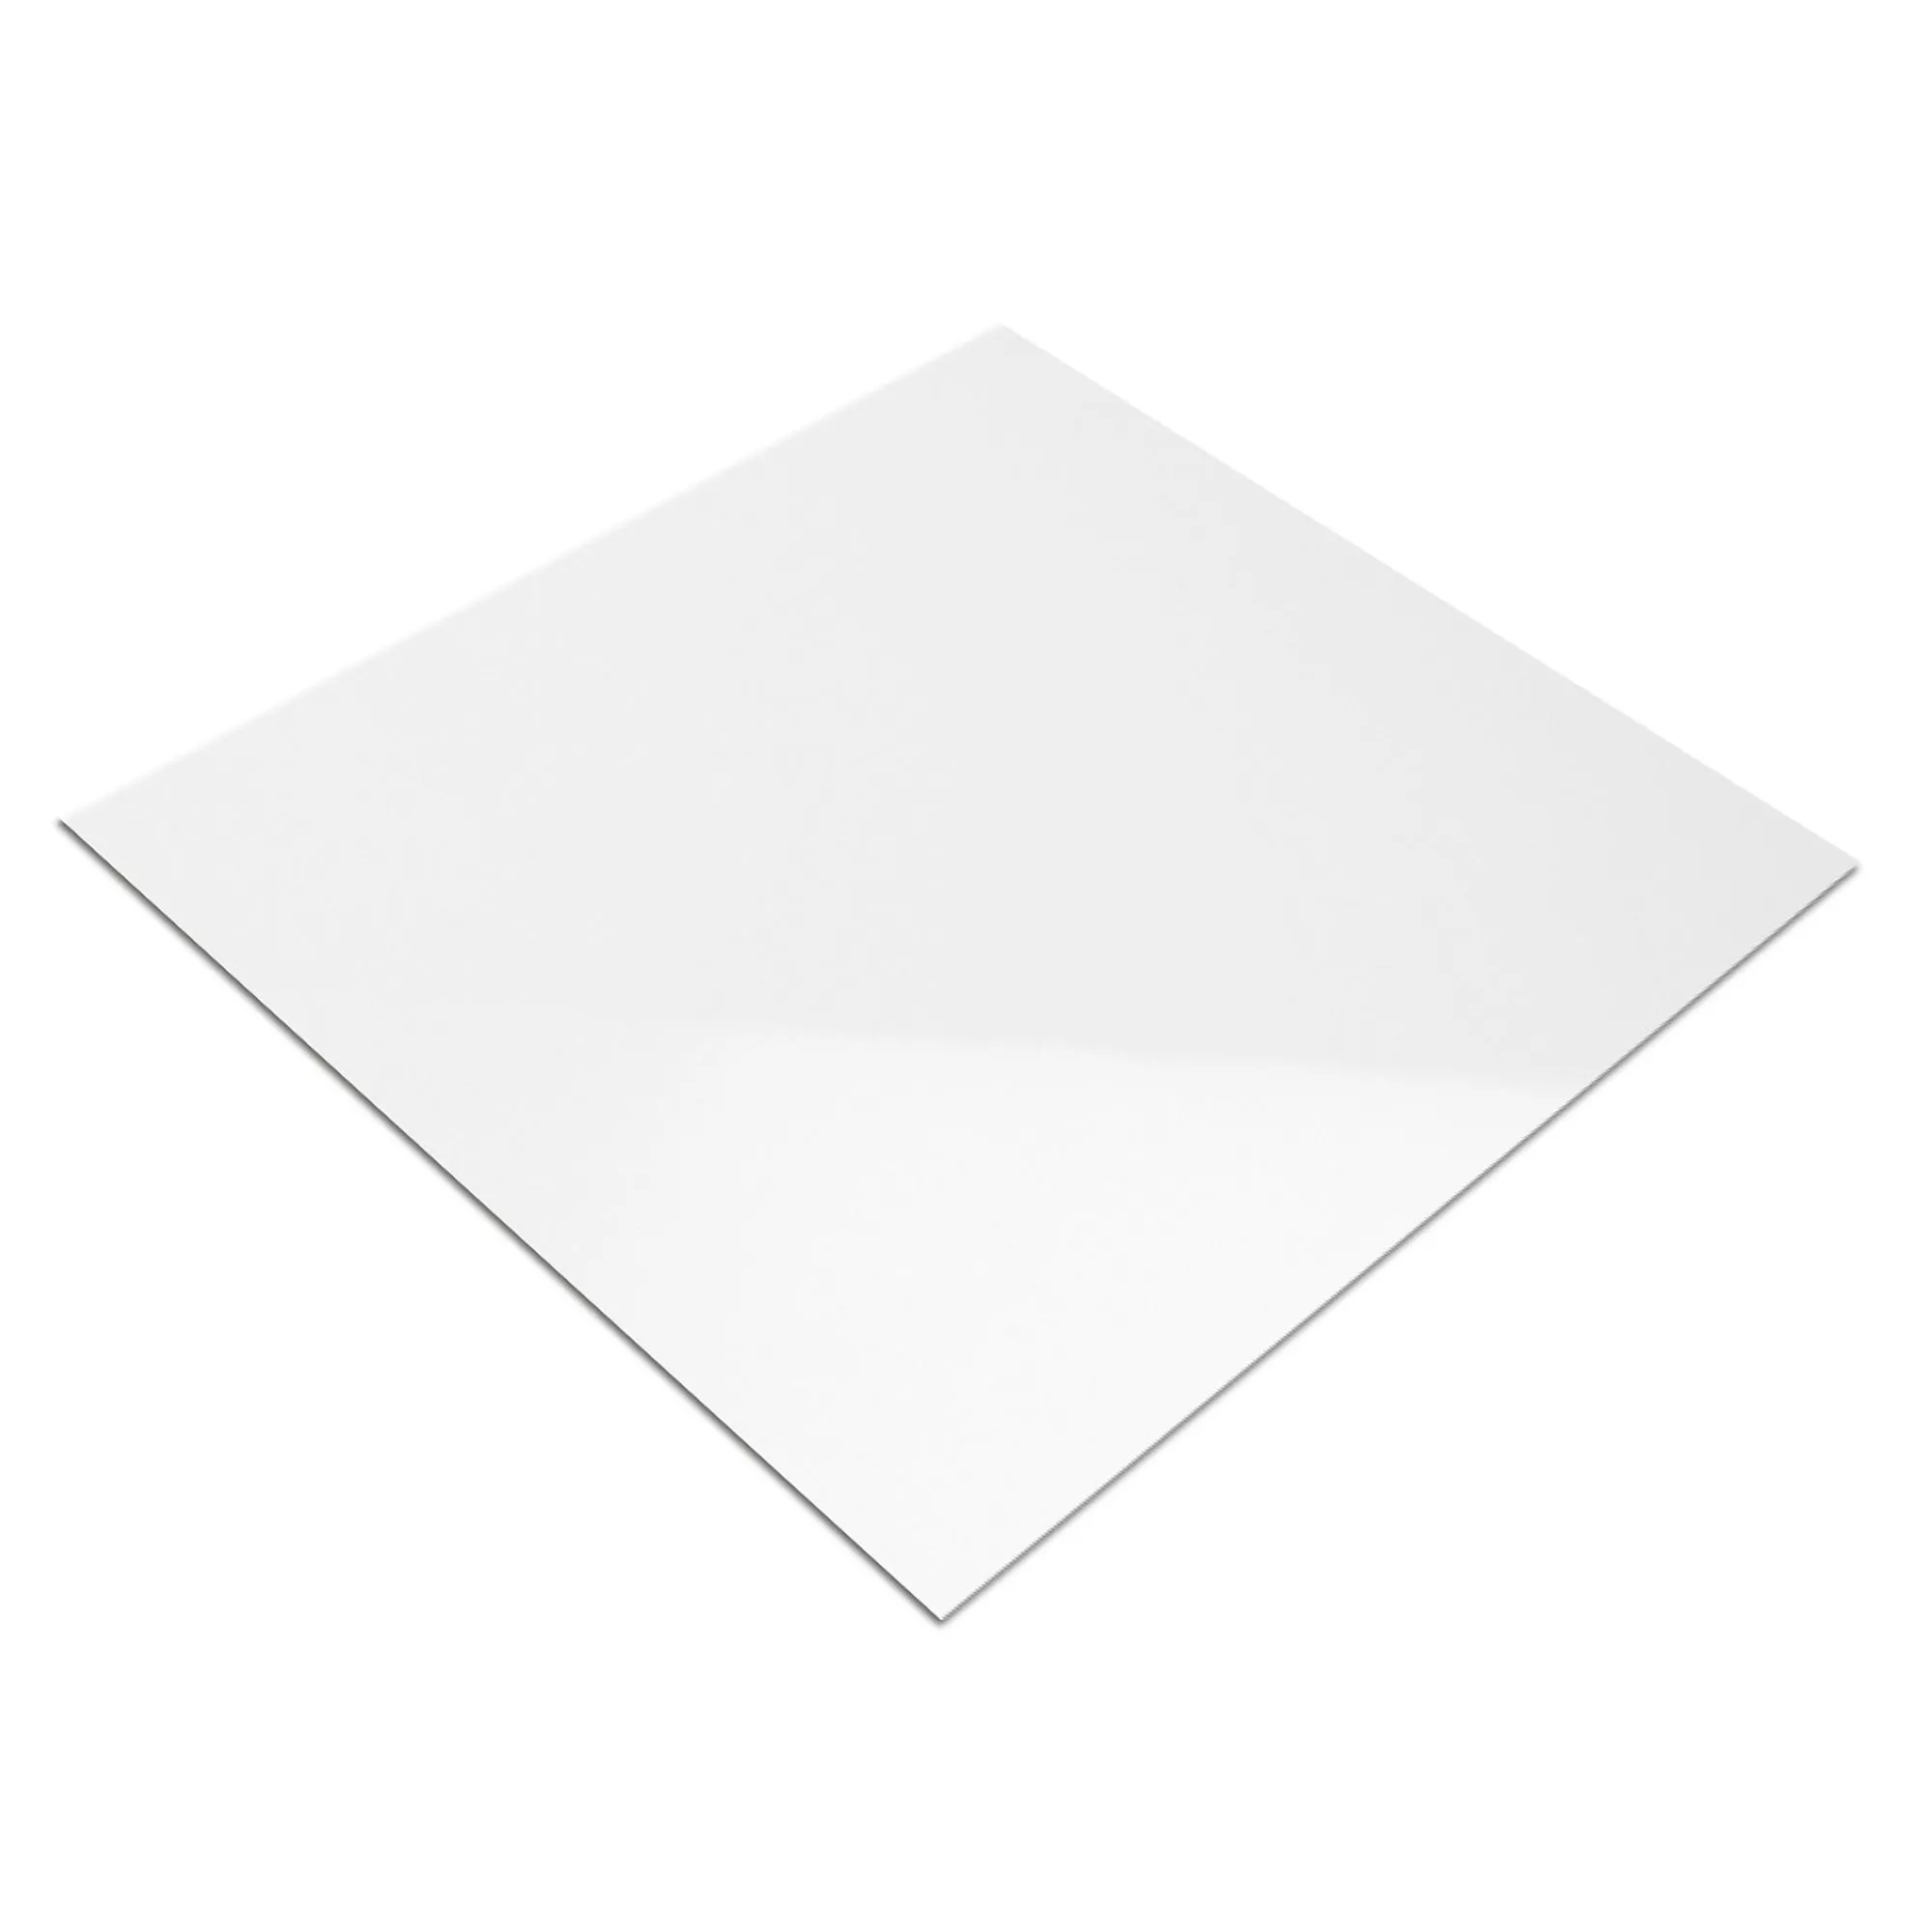 Muestra Revestimiento Fenway Blanco Brillante 15x15cm